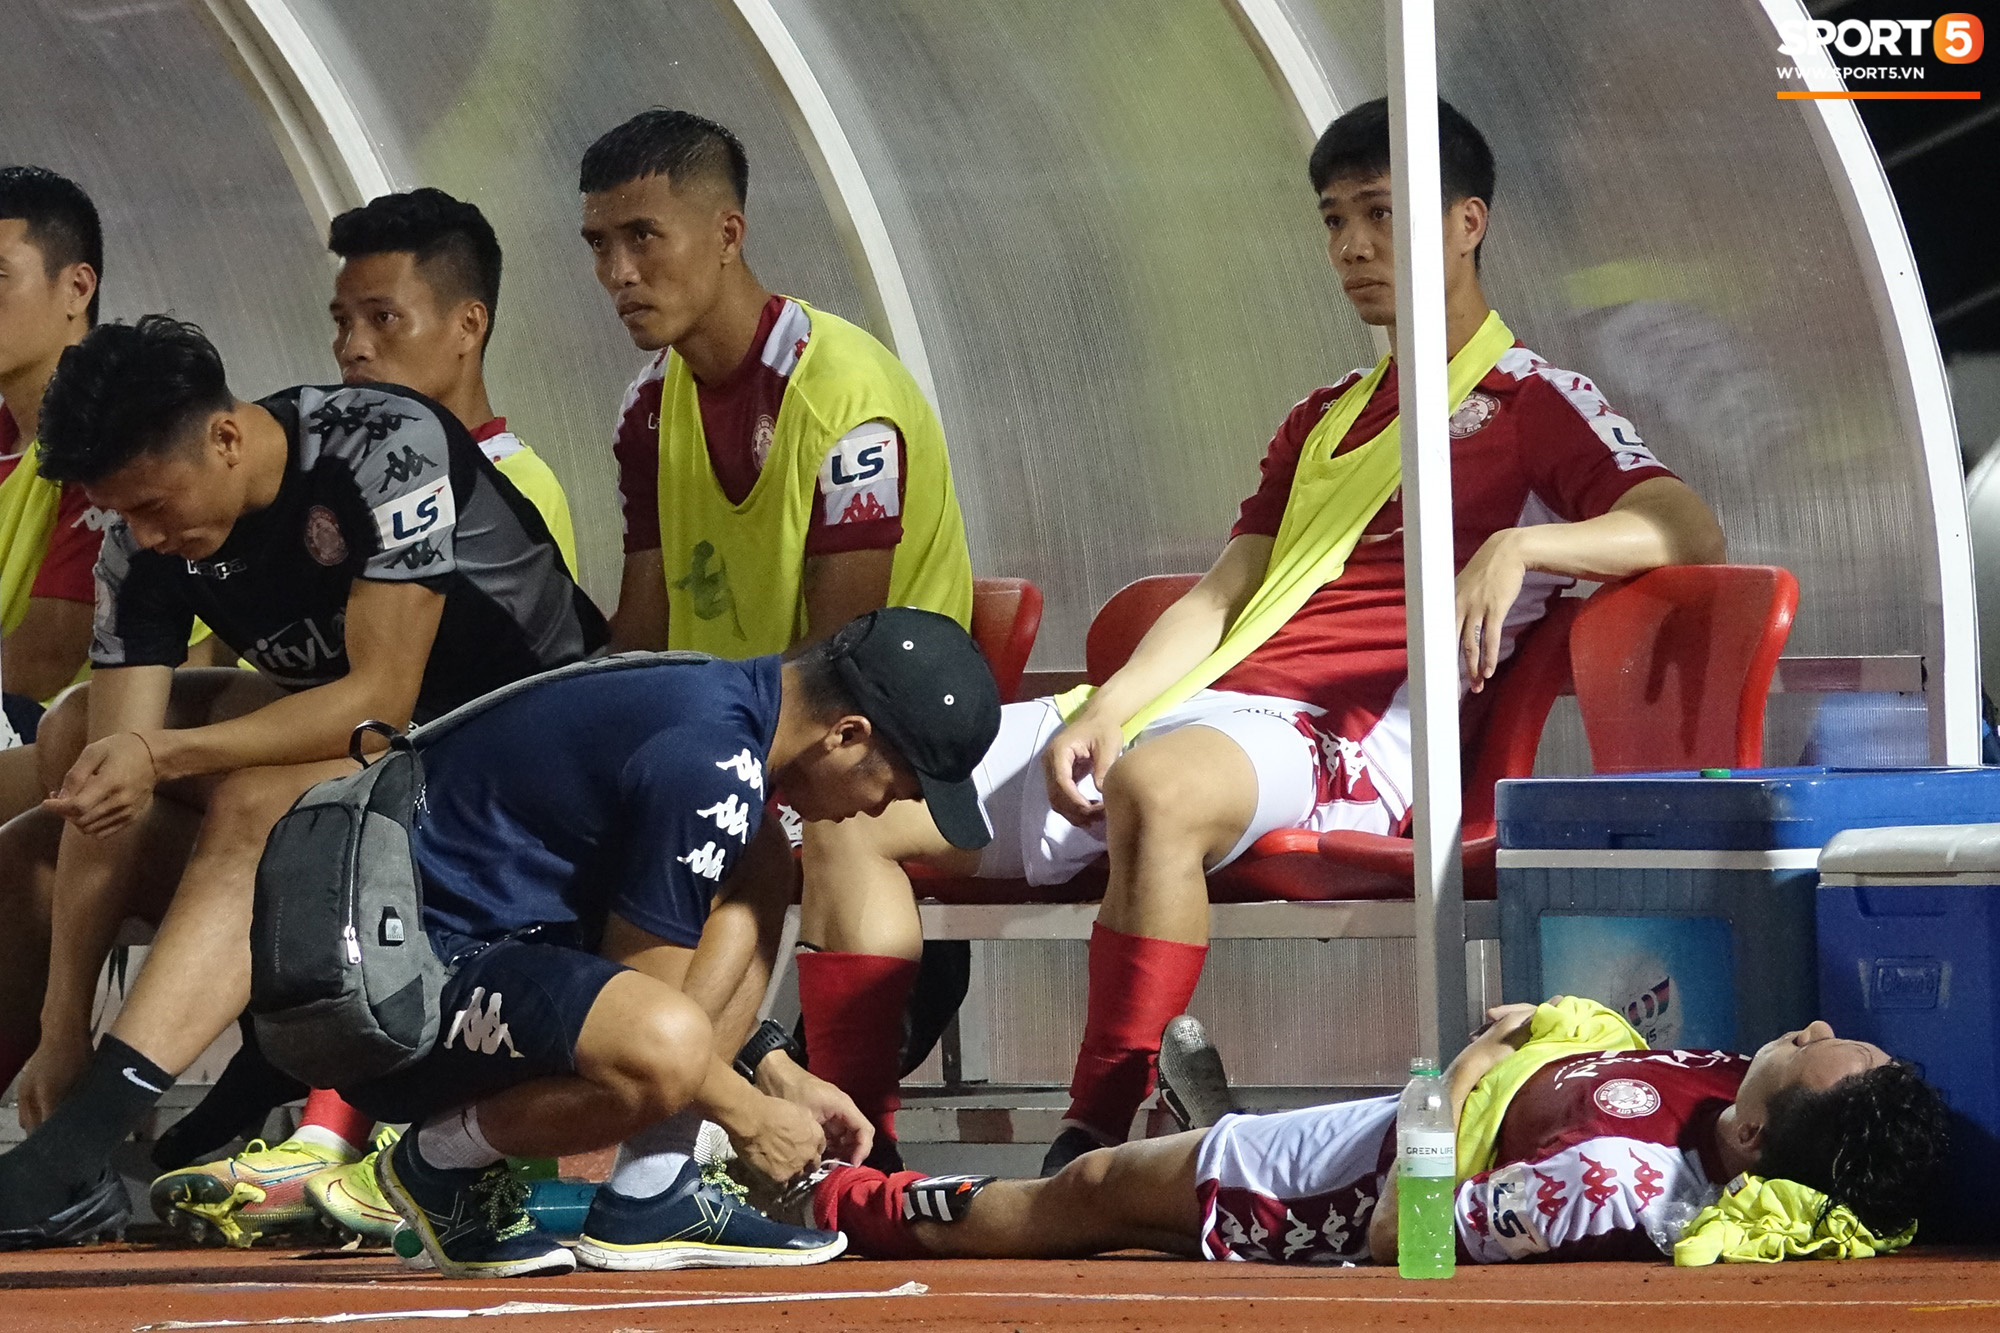 Võ Huy Toàn chấn thương nặng hơn dự kiến, cố thi đấu dù không có cảm giác bóng  - Ảnh 3.